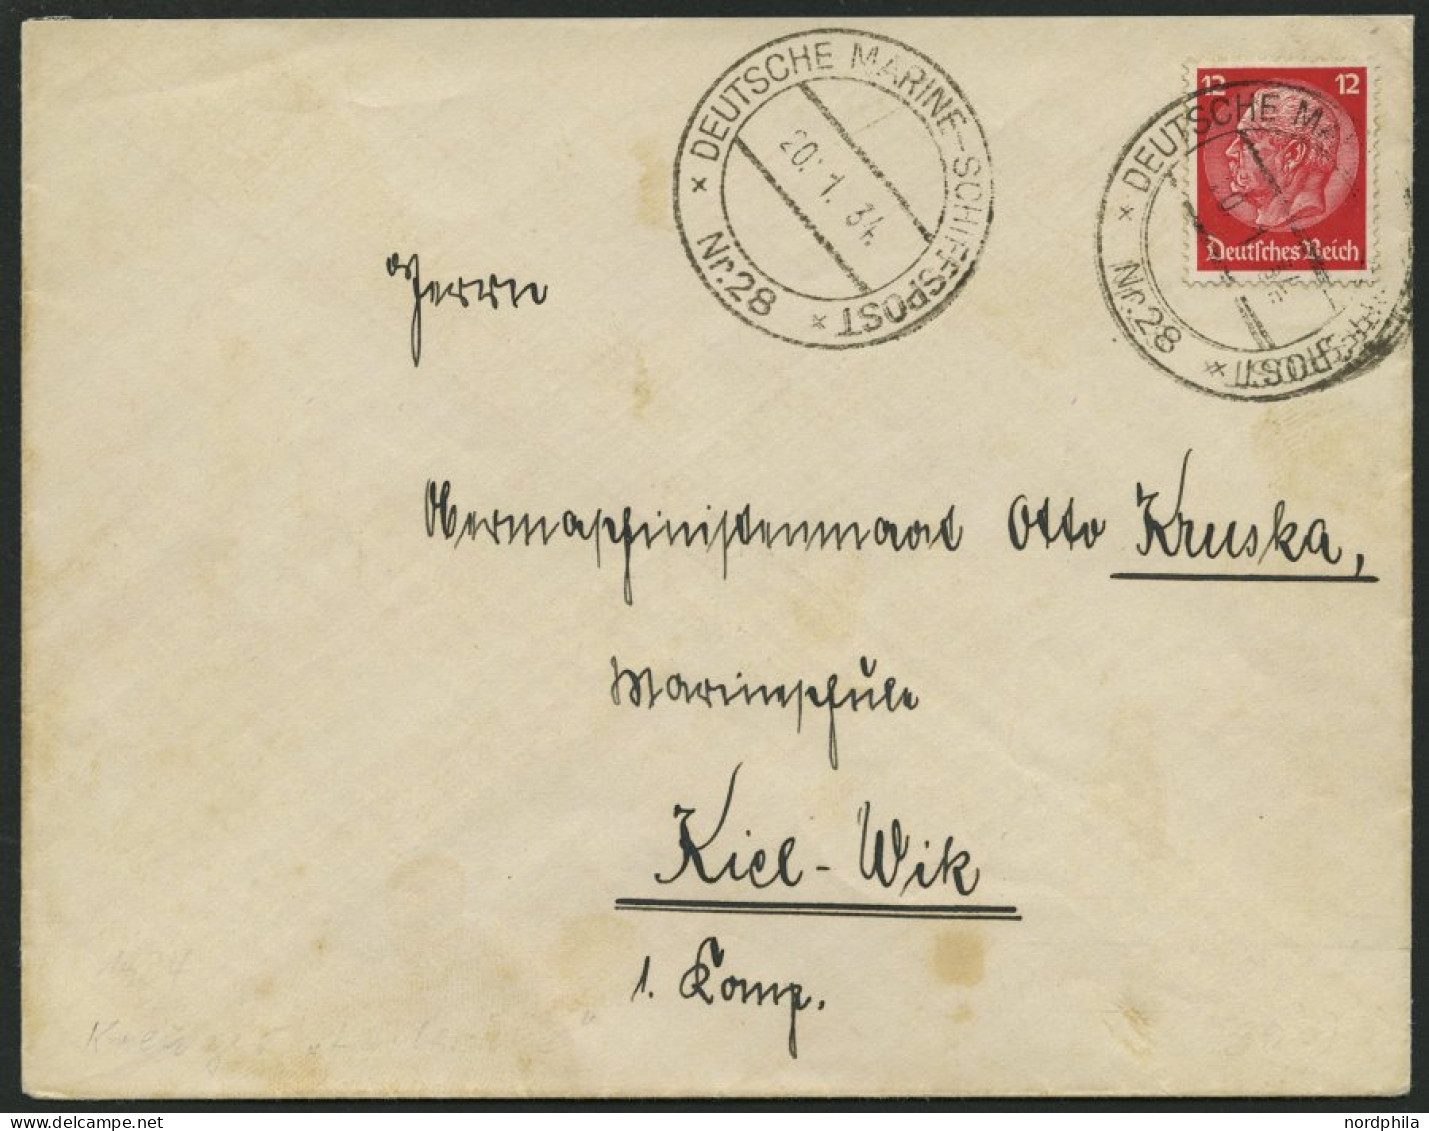 MSP VON 1920 - 1940 DR 487 BRIEF, 28 (Kreuzer KARLSRUHE), 20.1.1934, Etwas Fleckiger Prachtbrief Nach Kiel - Maritiem